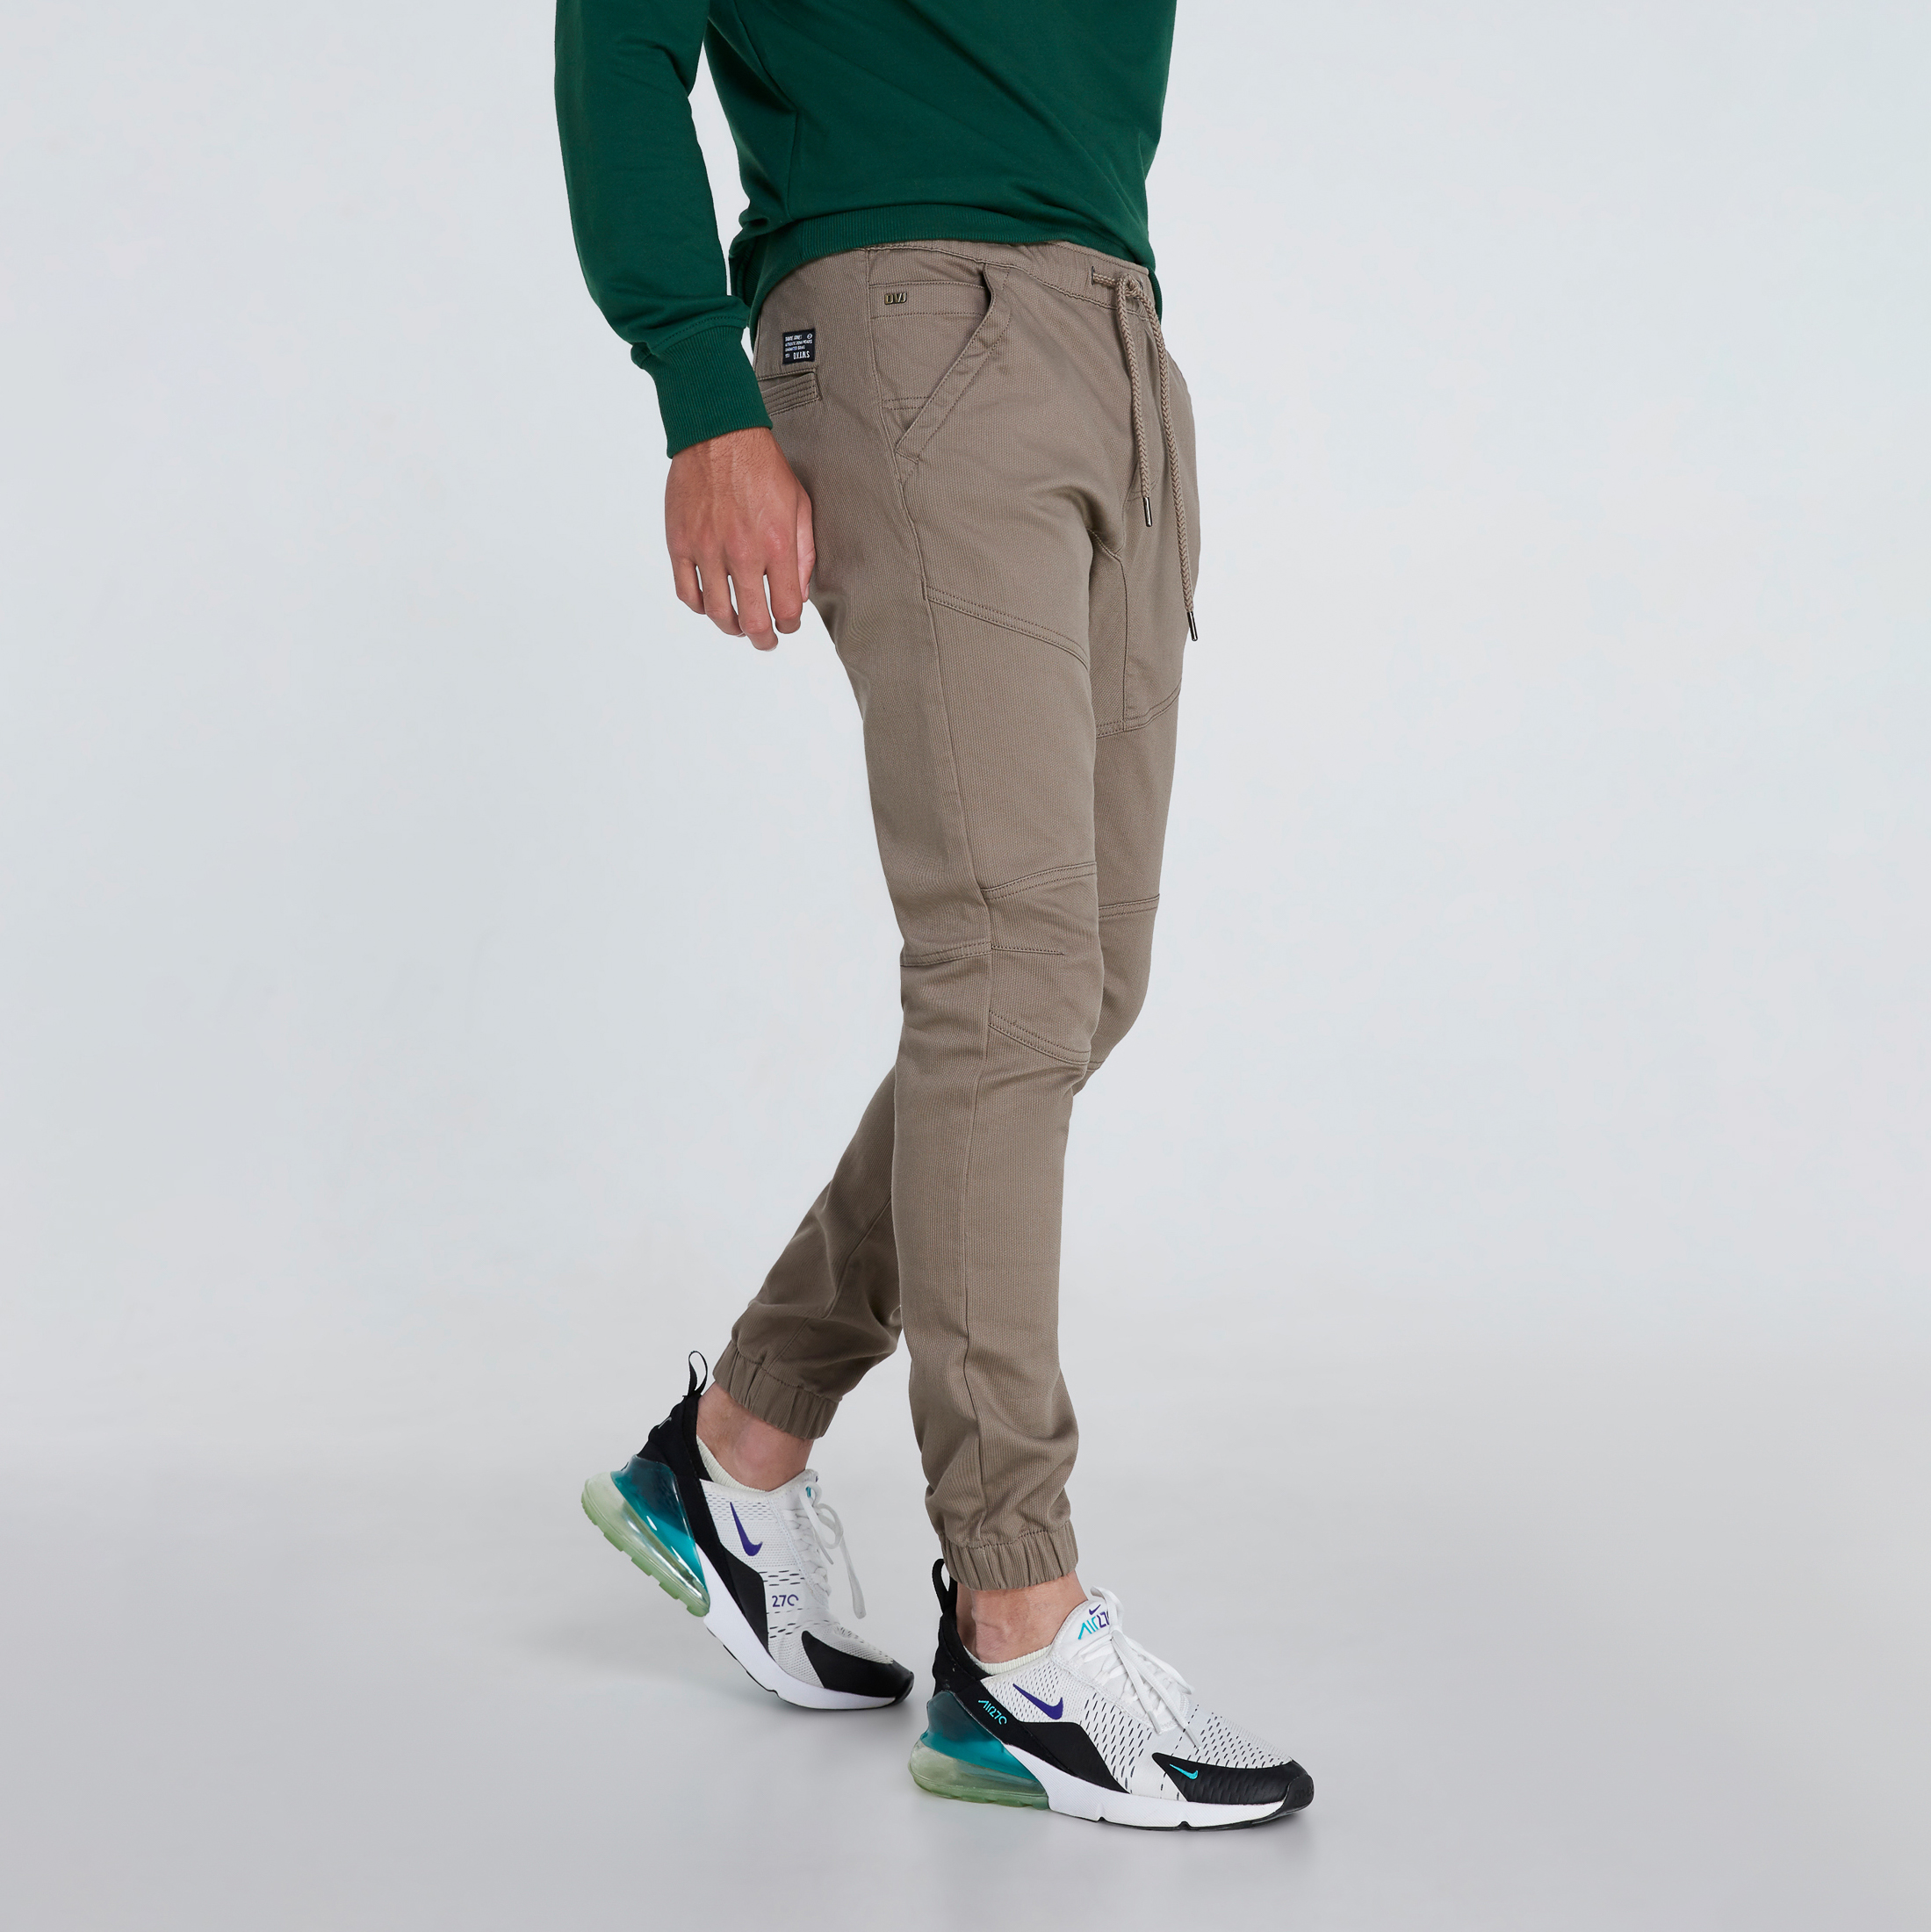 DAVIE JONES กางเกงจ็อกเกอร์ เอวยางยืด ขาจั๊ม สีเทา สีดำ สีน้ำตาล สีกากี สีเขียว สีกรม Elasticated Joggers